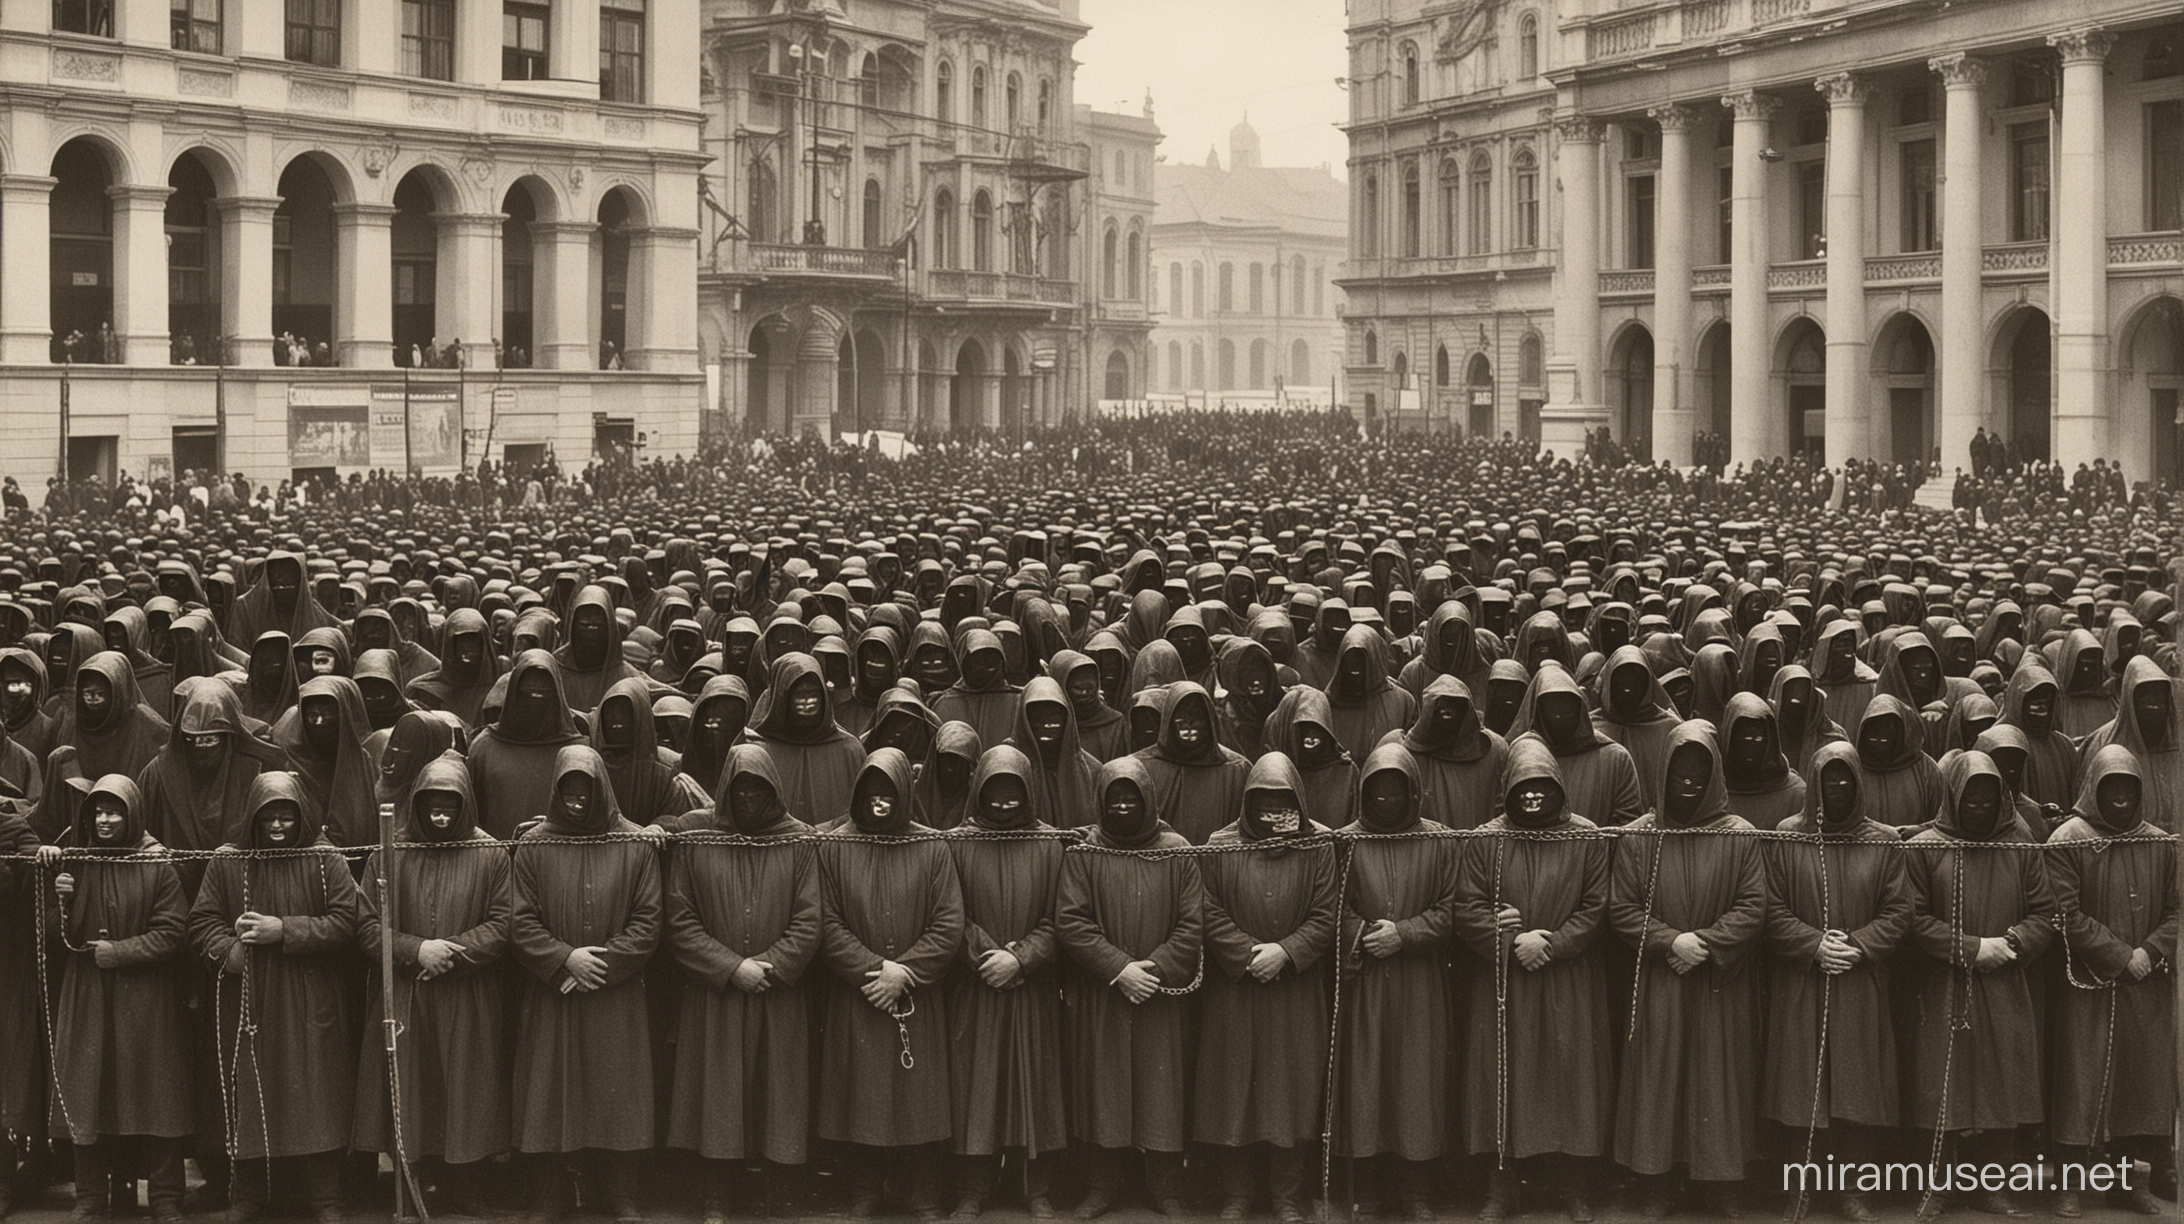 Praça pública com homens com capuz preto cobrindo o rosto e acorrentados, soldados em cima fazendo anúncio e pessoas envolta, Romênia 1910 fotografia 